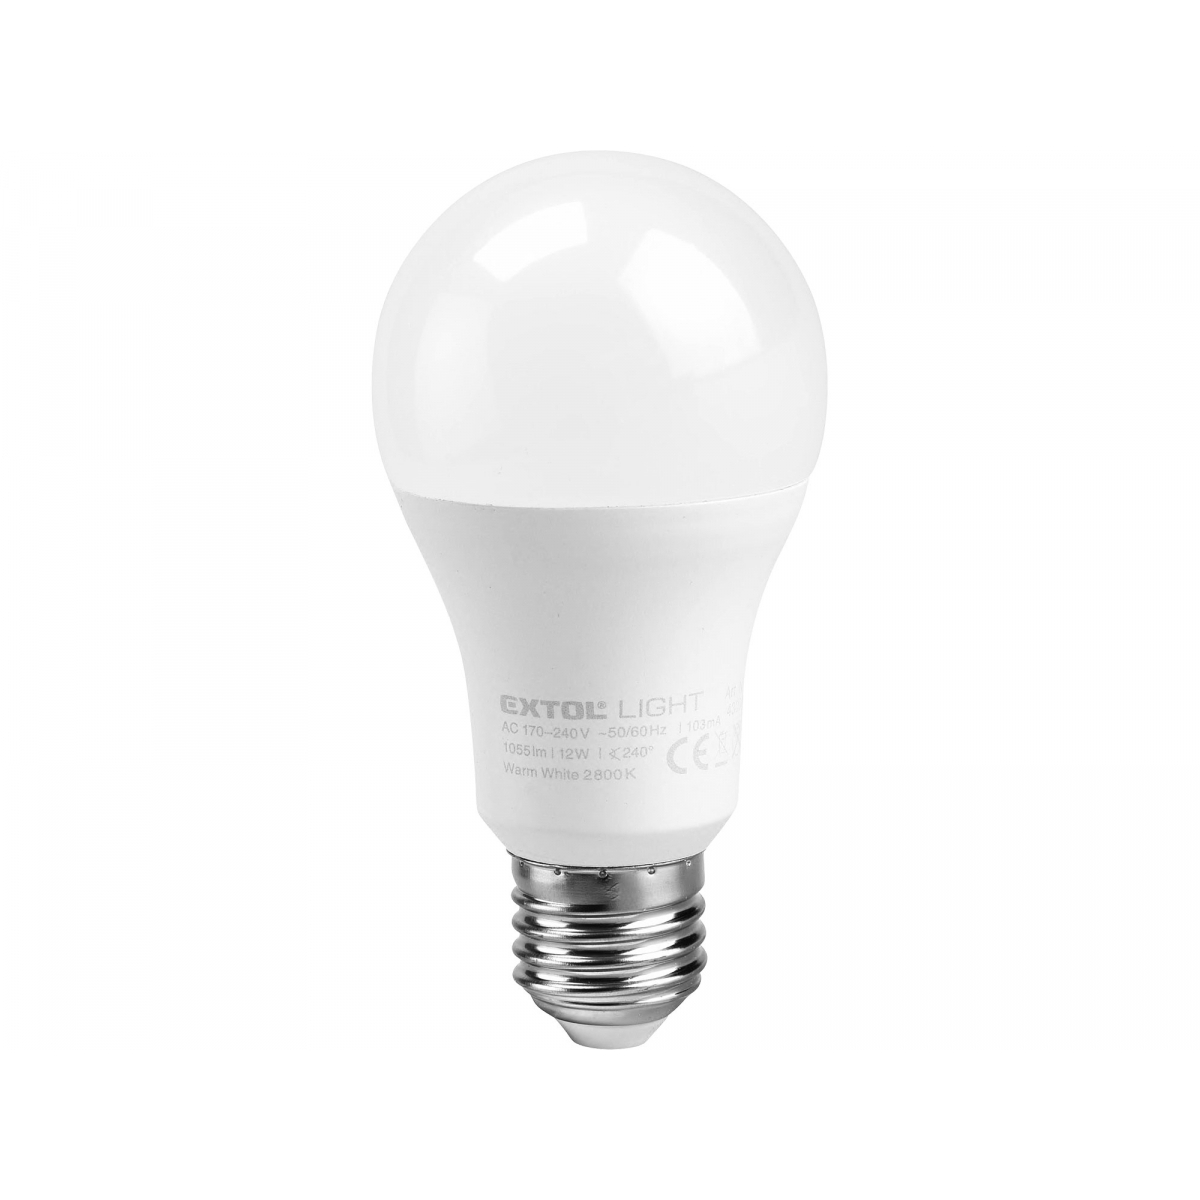 EXTOL LIGHT žárovka LED klasická, 9W, 800lm, E27, teplá bílá